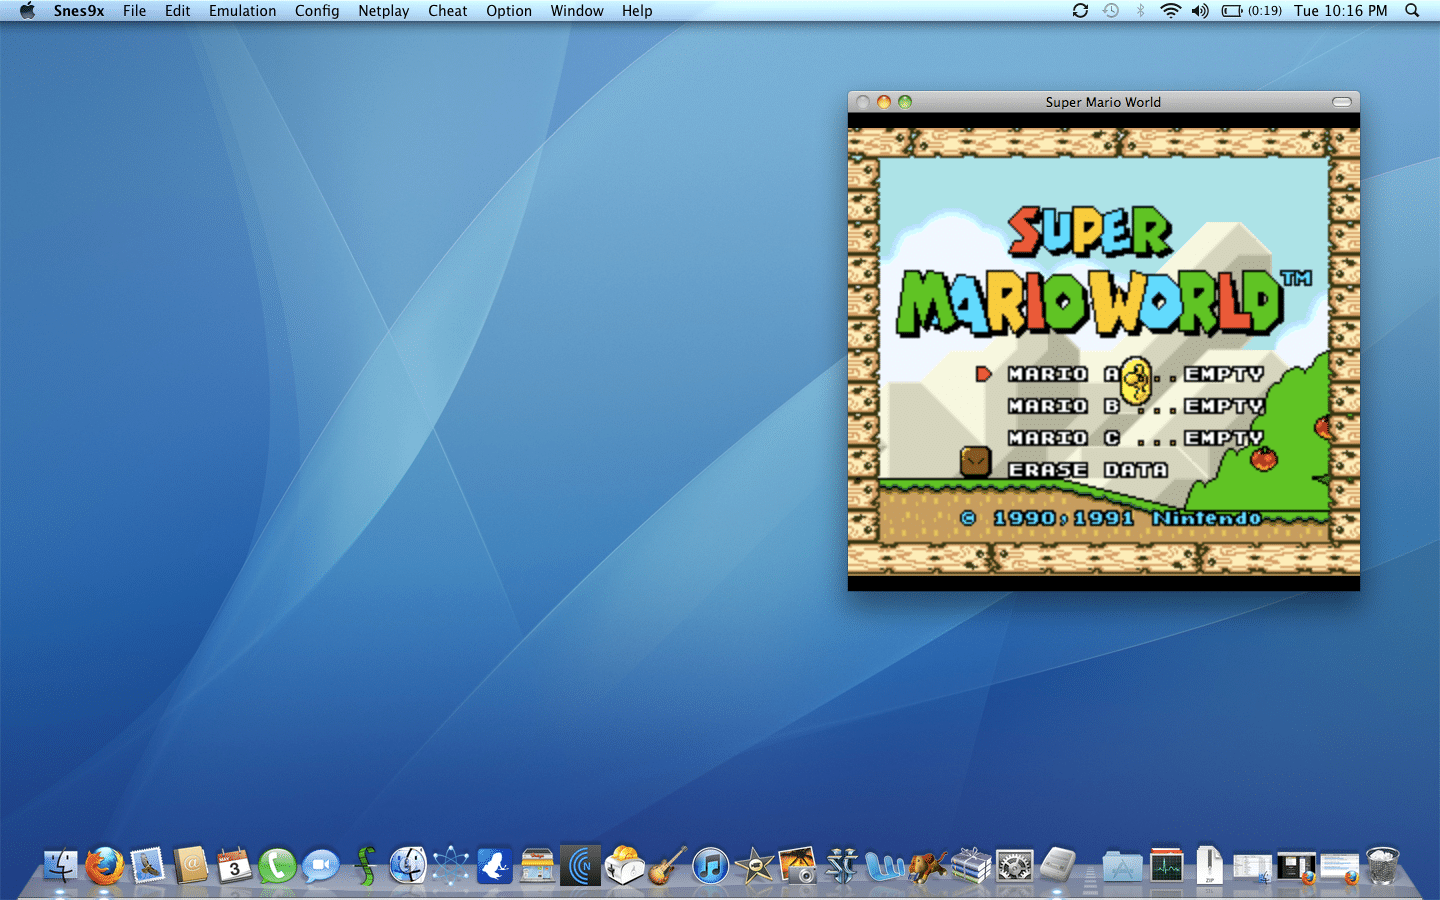 super nintendo emulator for mac